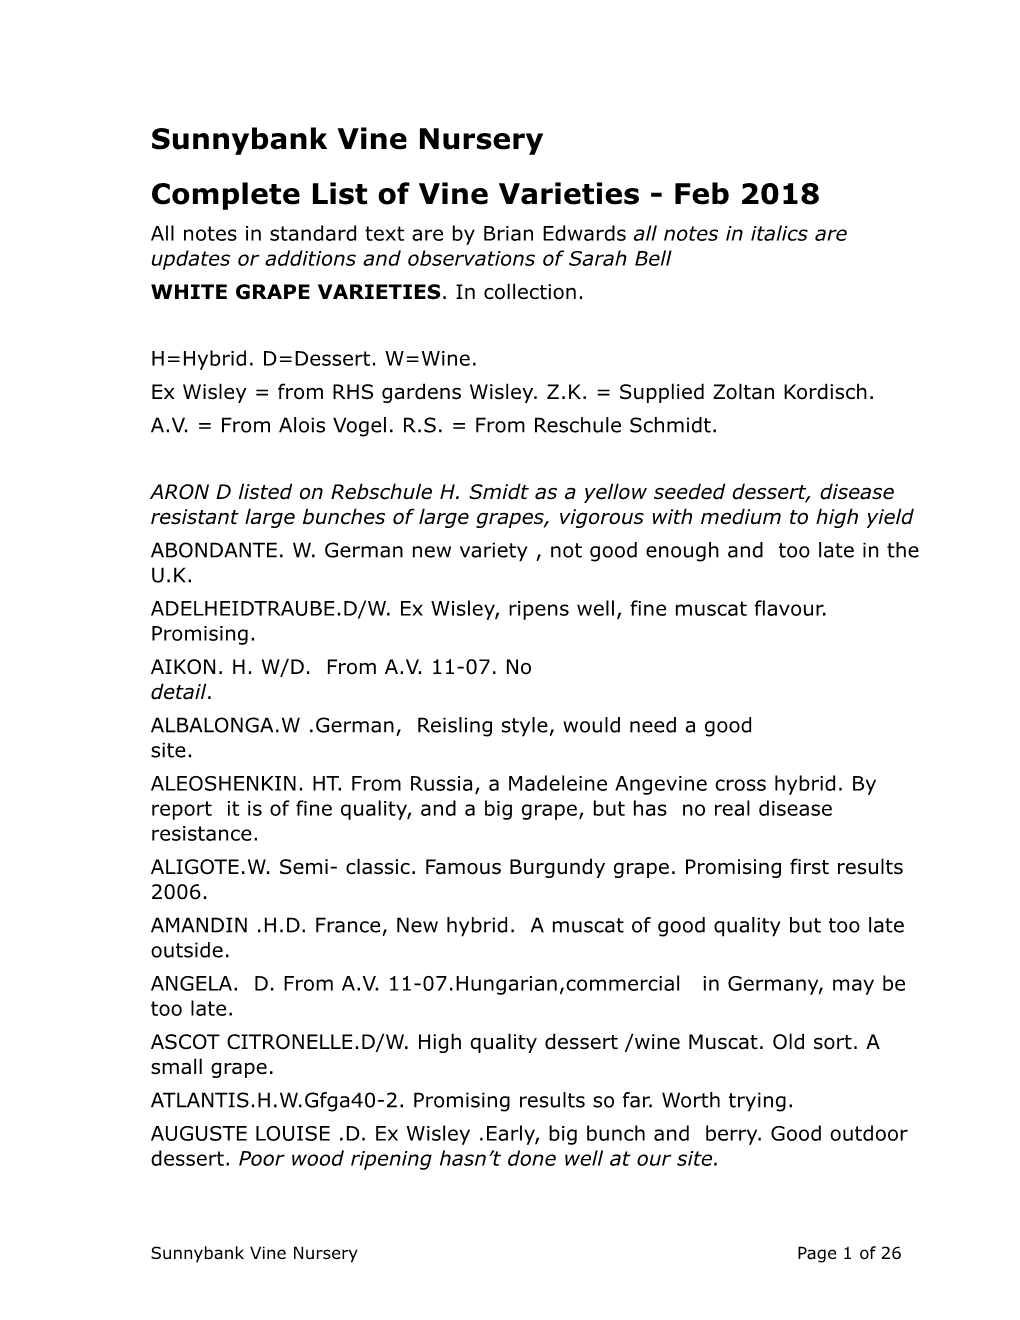 Sunnybank Vine Nursery Complete List of Vine Varieties